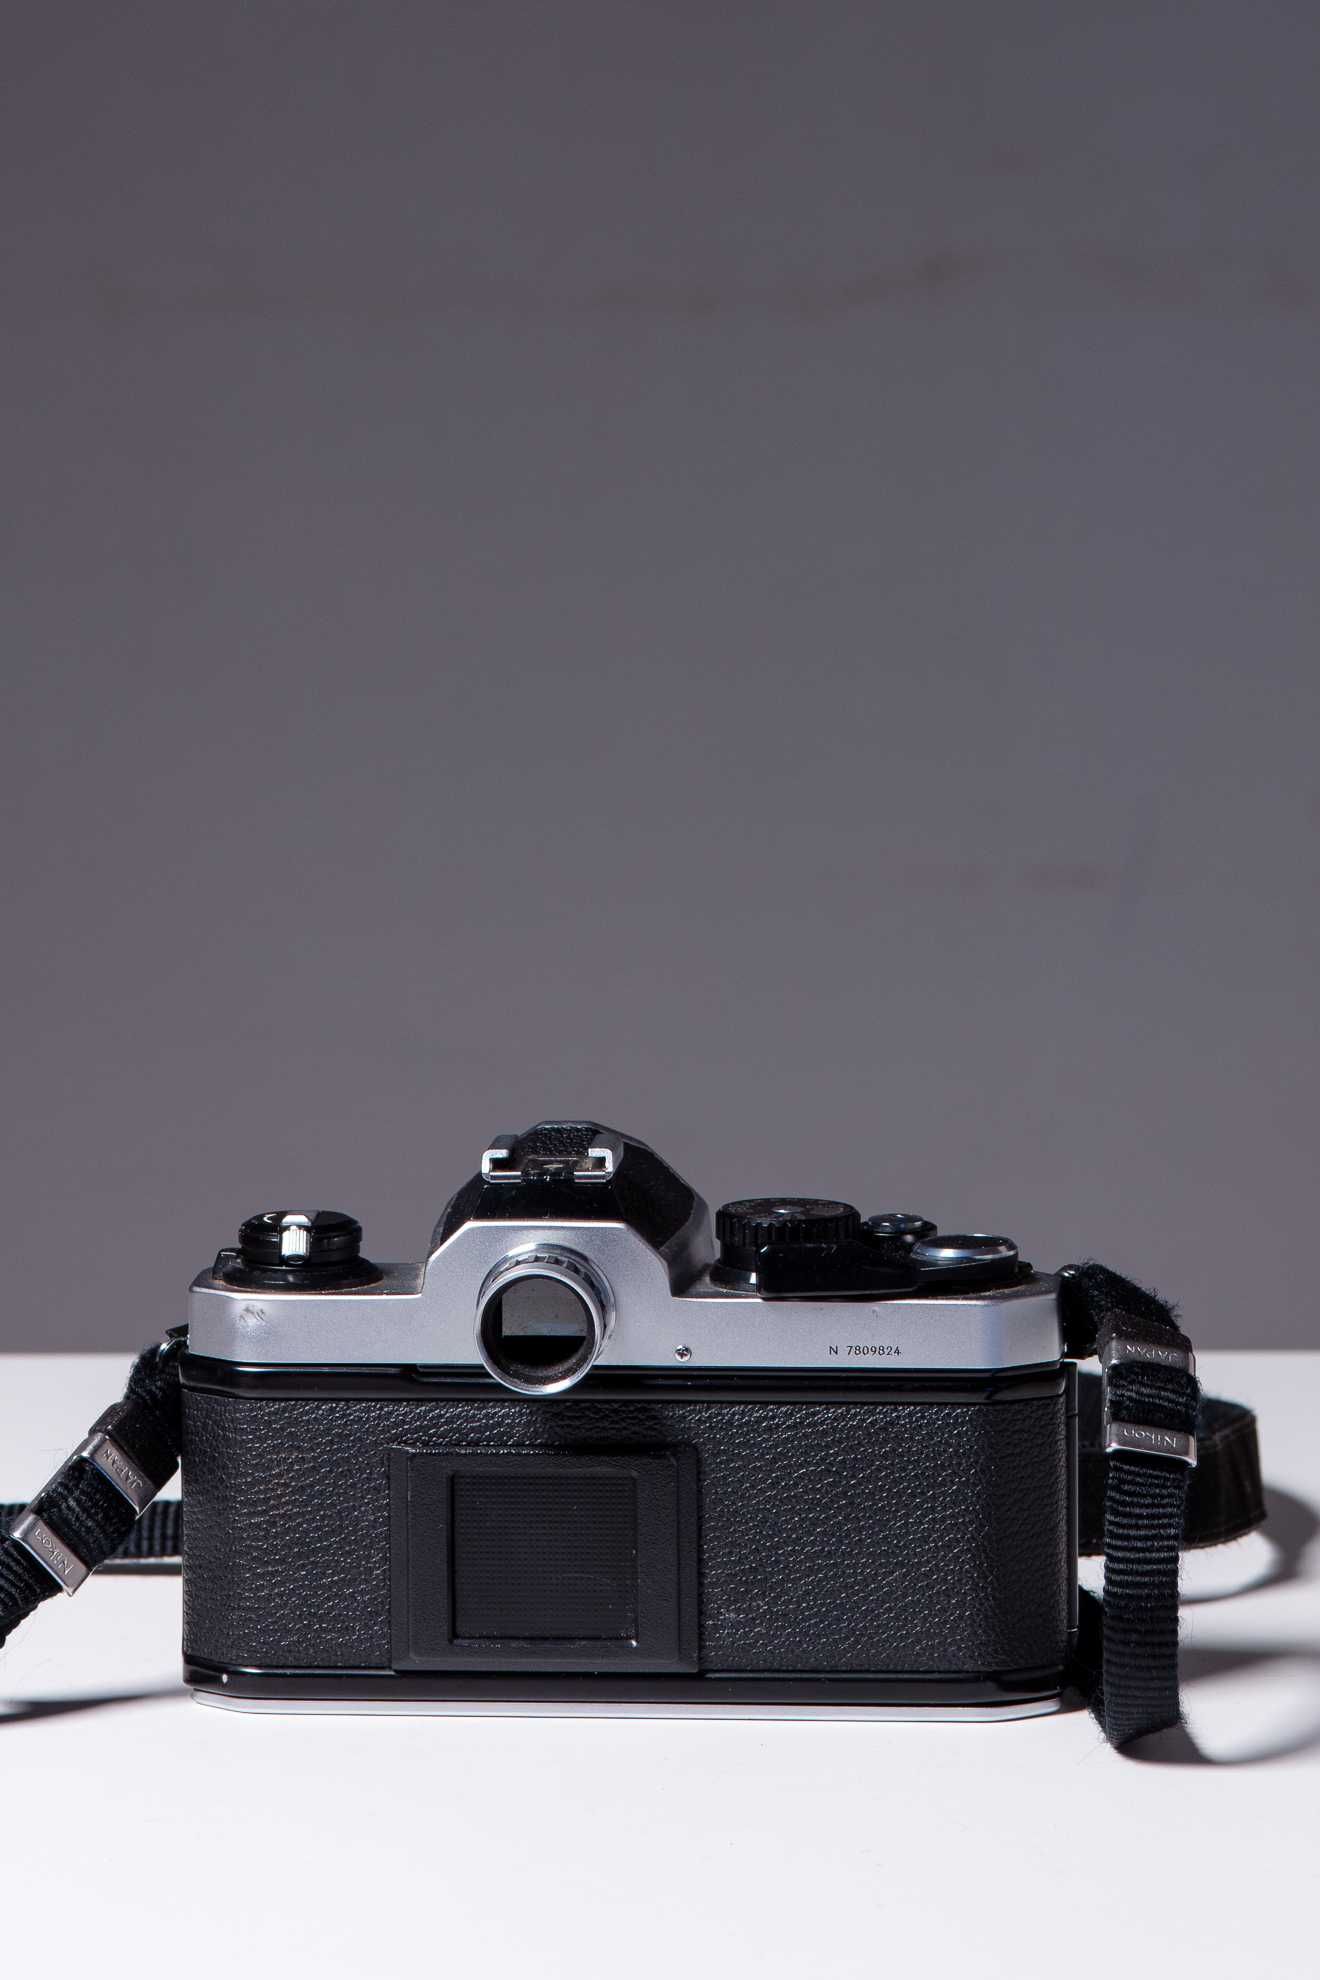 Nikon FM2n / Corpo de camara 35mm